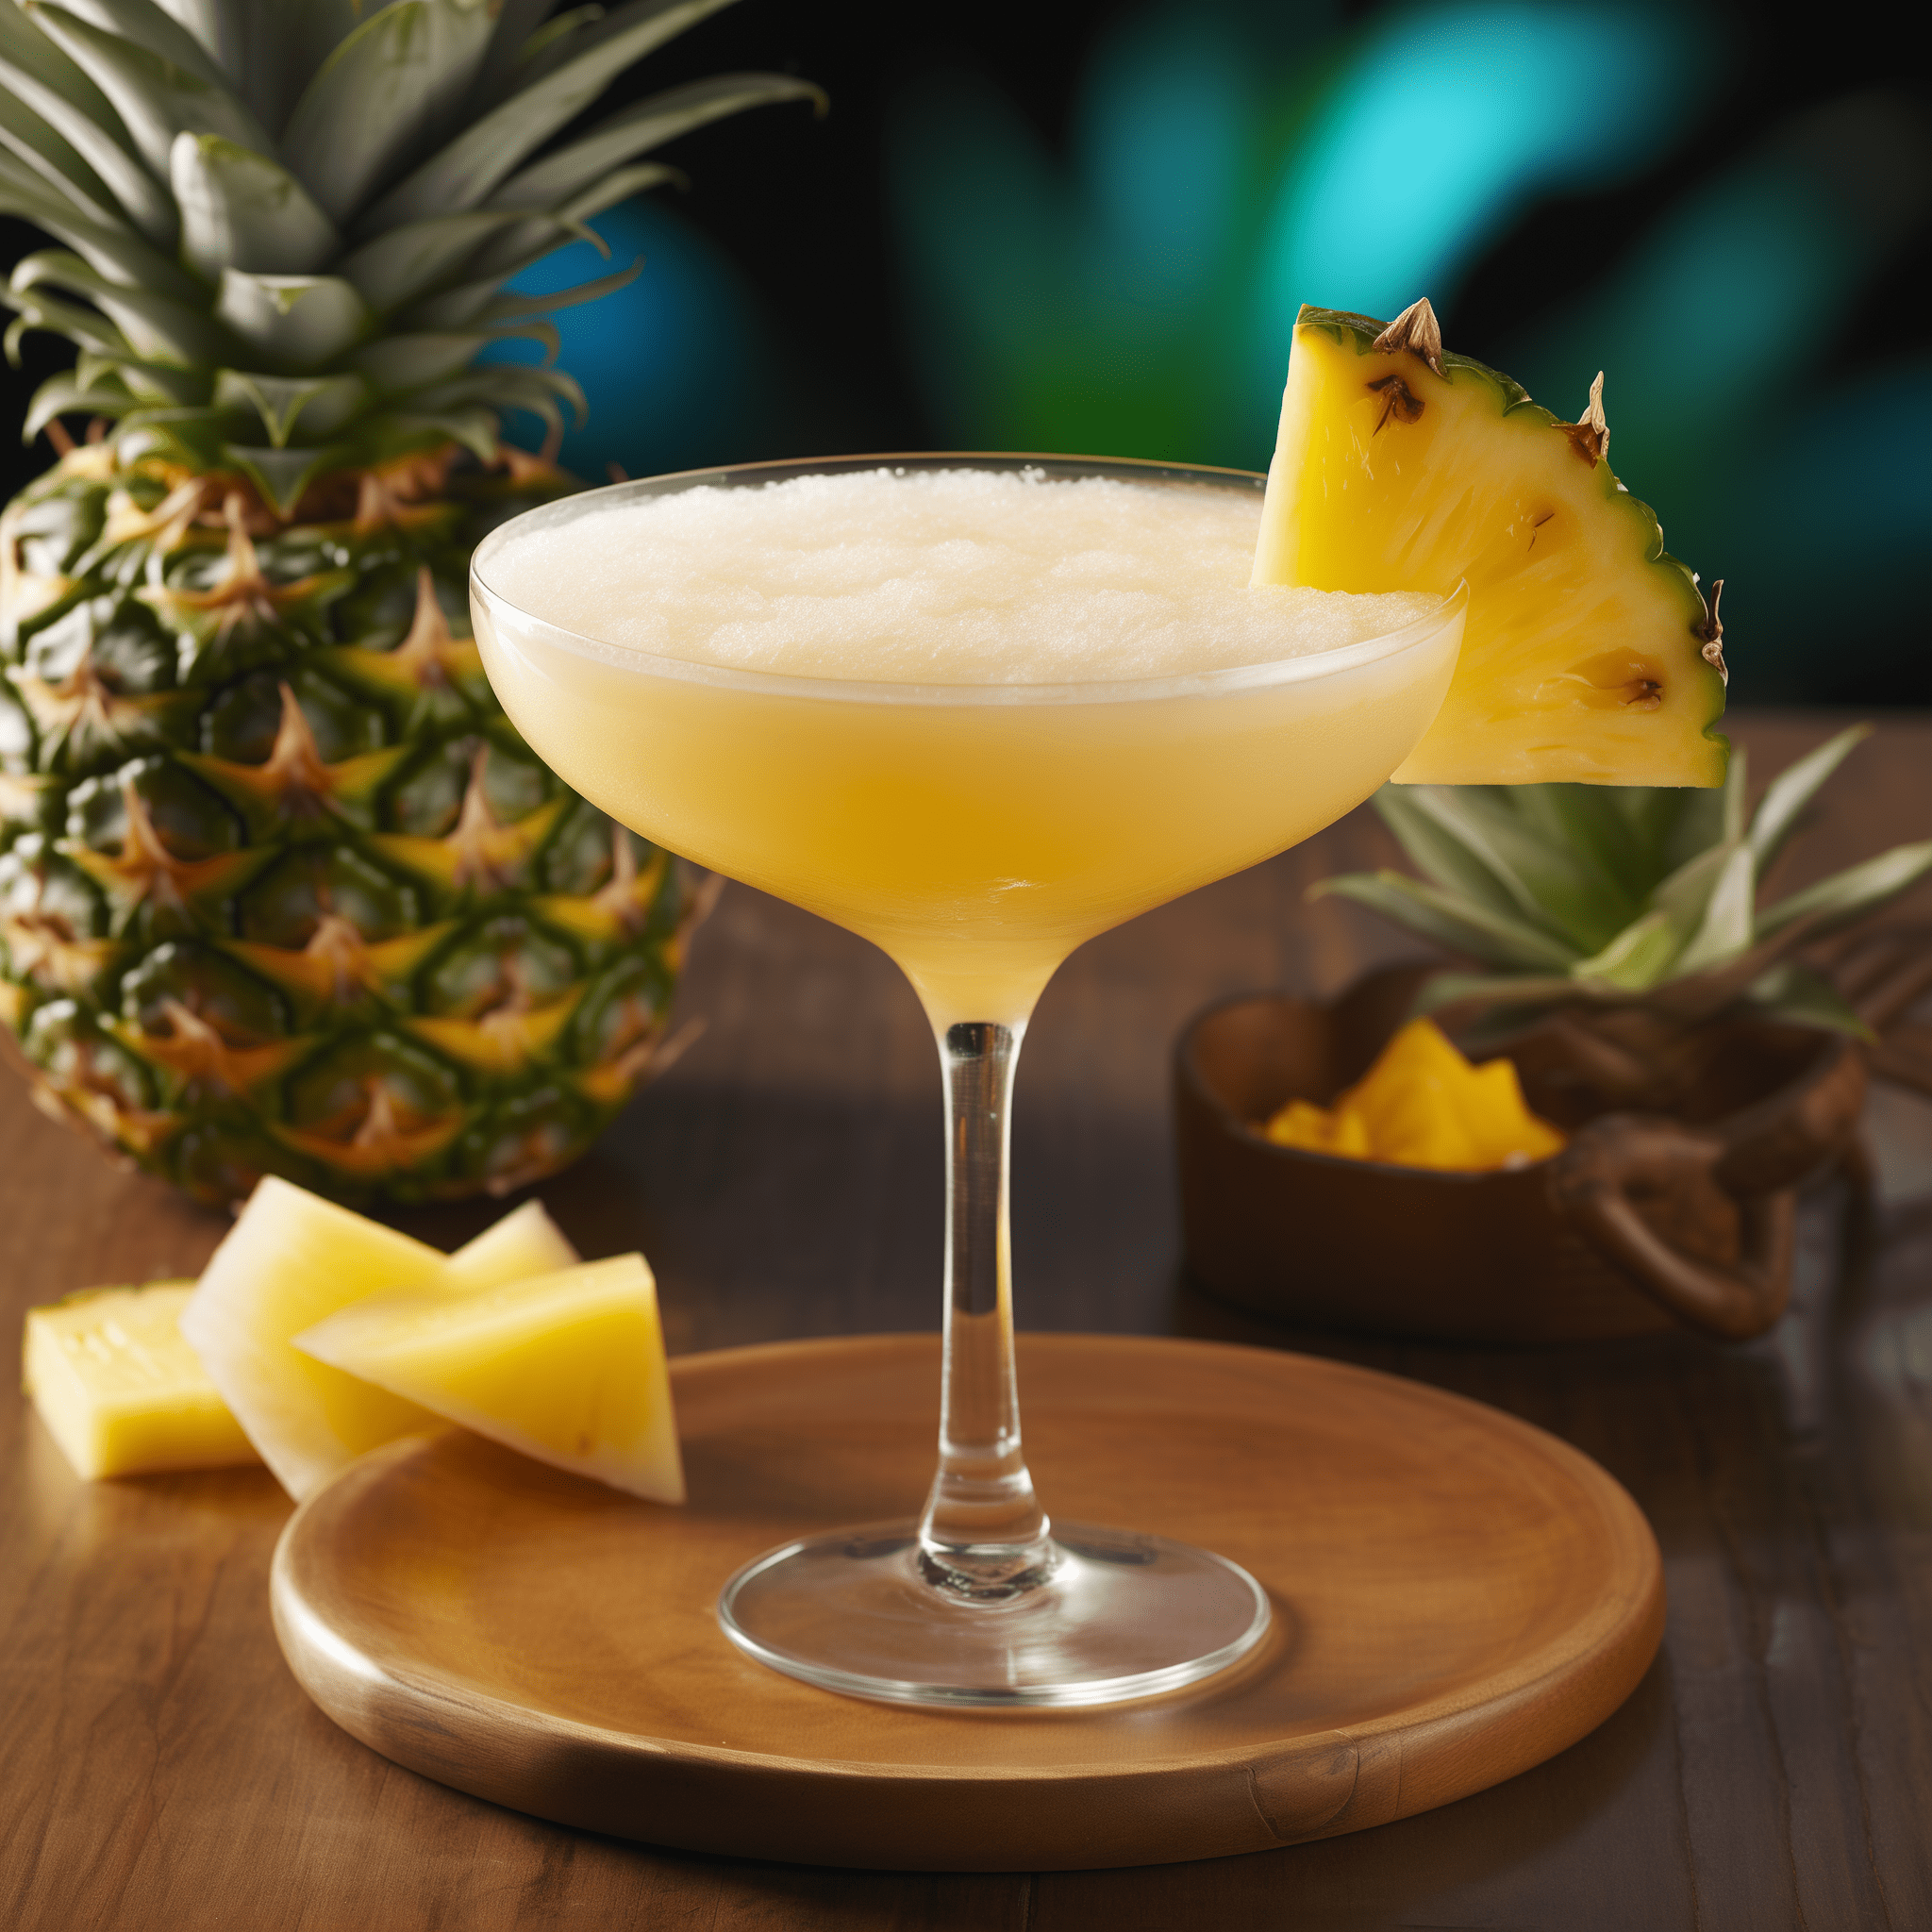 Malibu Pineapple Margarita Cóctel Receta - El Malibu Pineapple Margarita es una deliciosa mezcla de sabores dulces y ácidos con un sutil toque cremoso de coco. Es refrescante, afrutado y tiene un ligero toque alcohólico que no es demasiado abrumador.